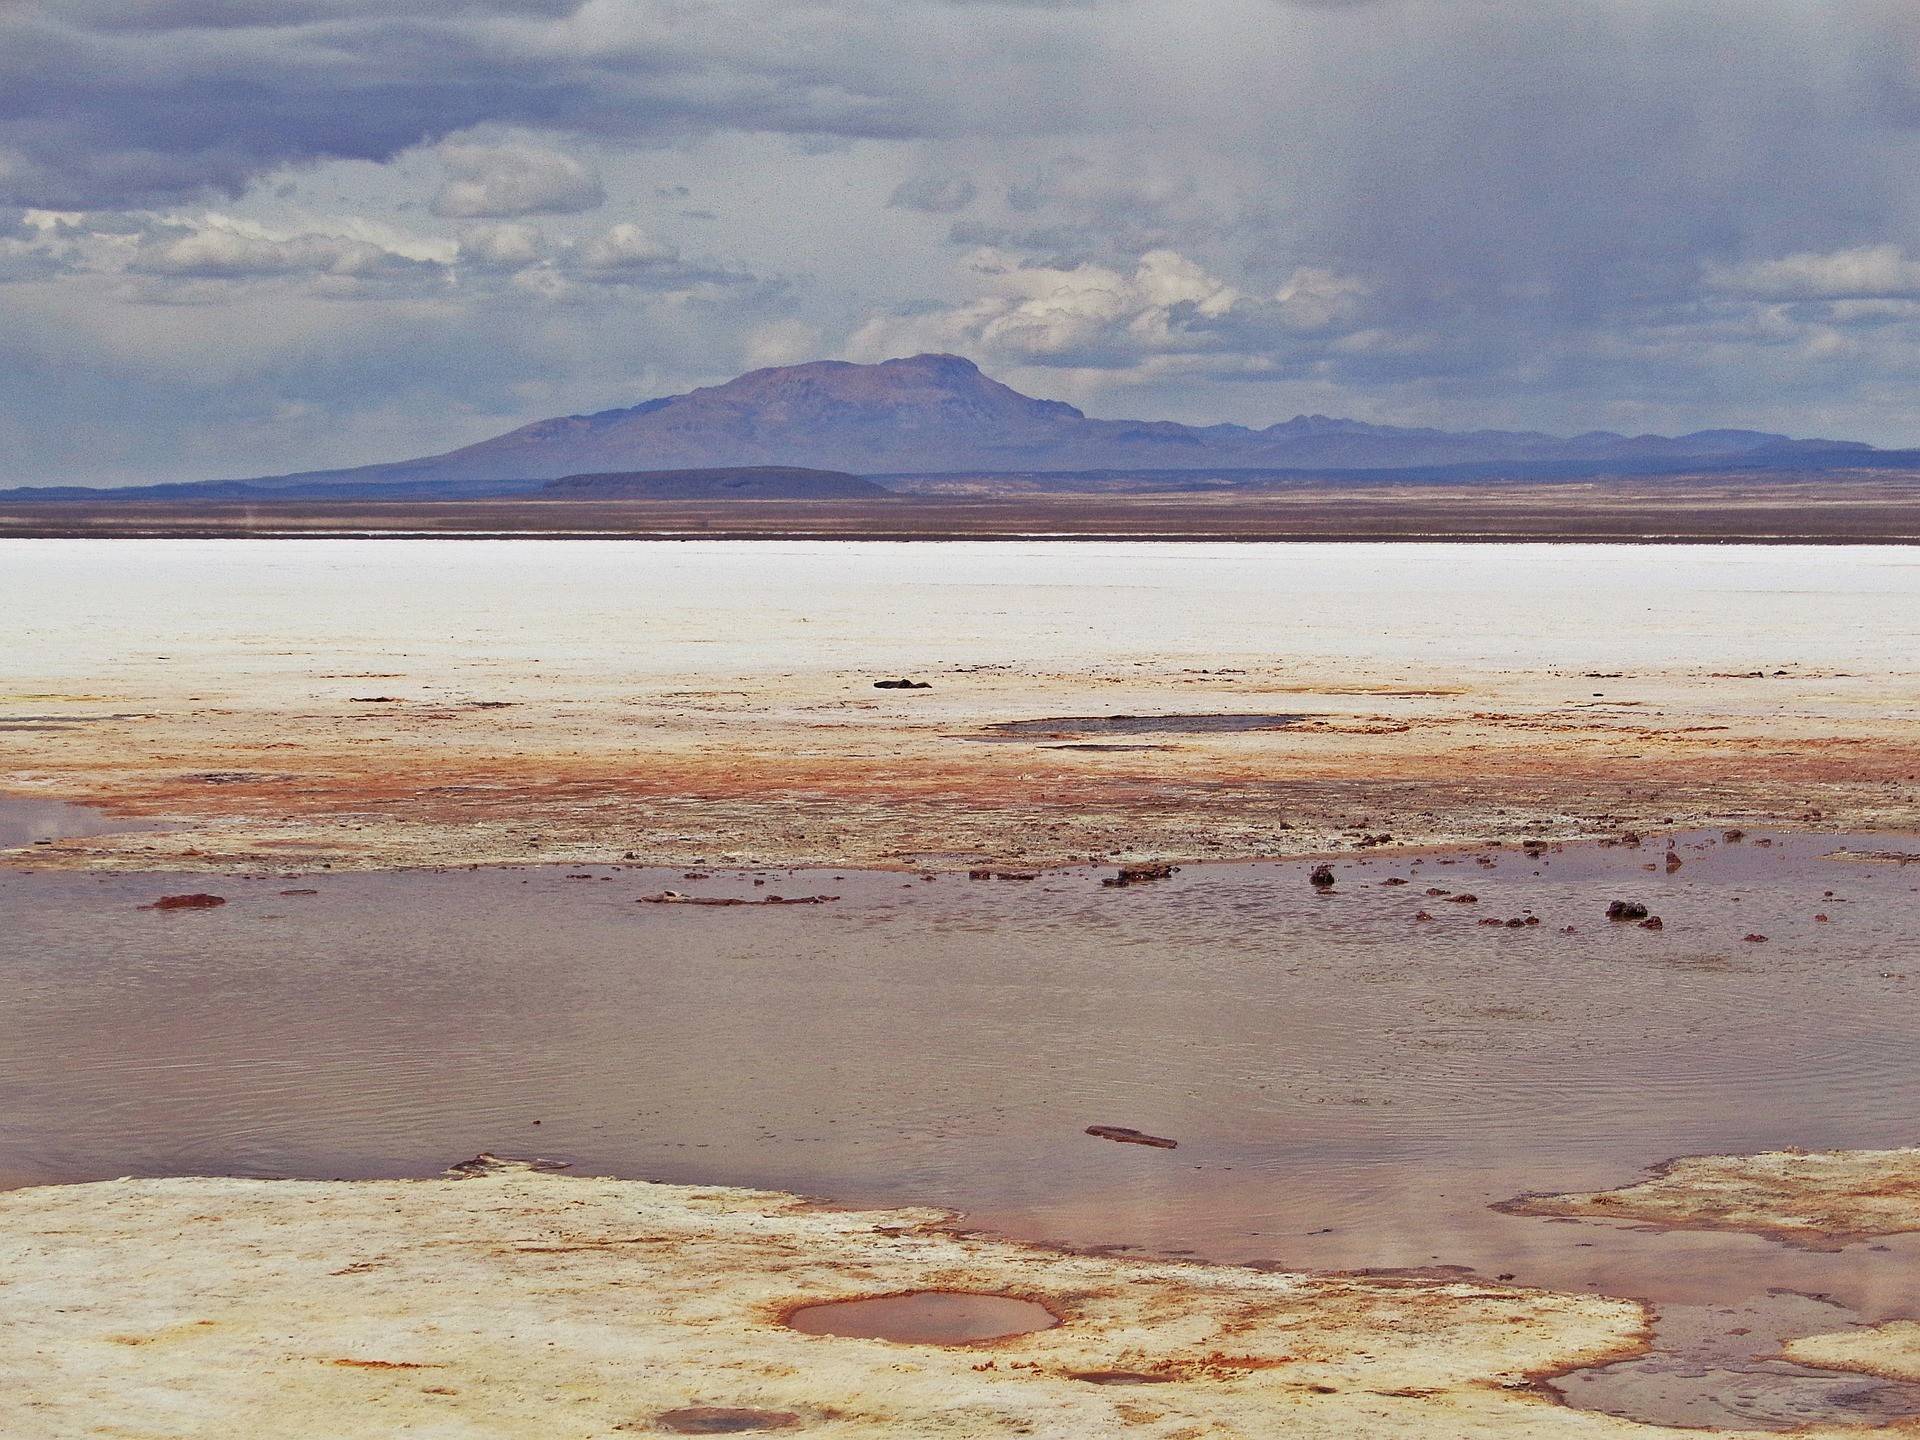 Erkundung von Uyuni, der größten Salzwüste der Welt